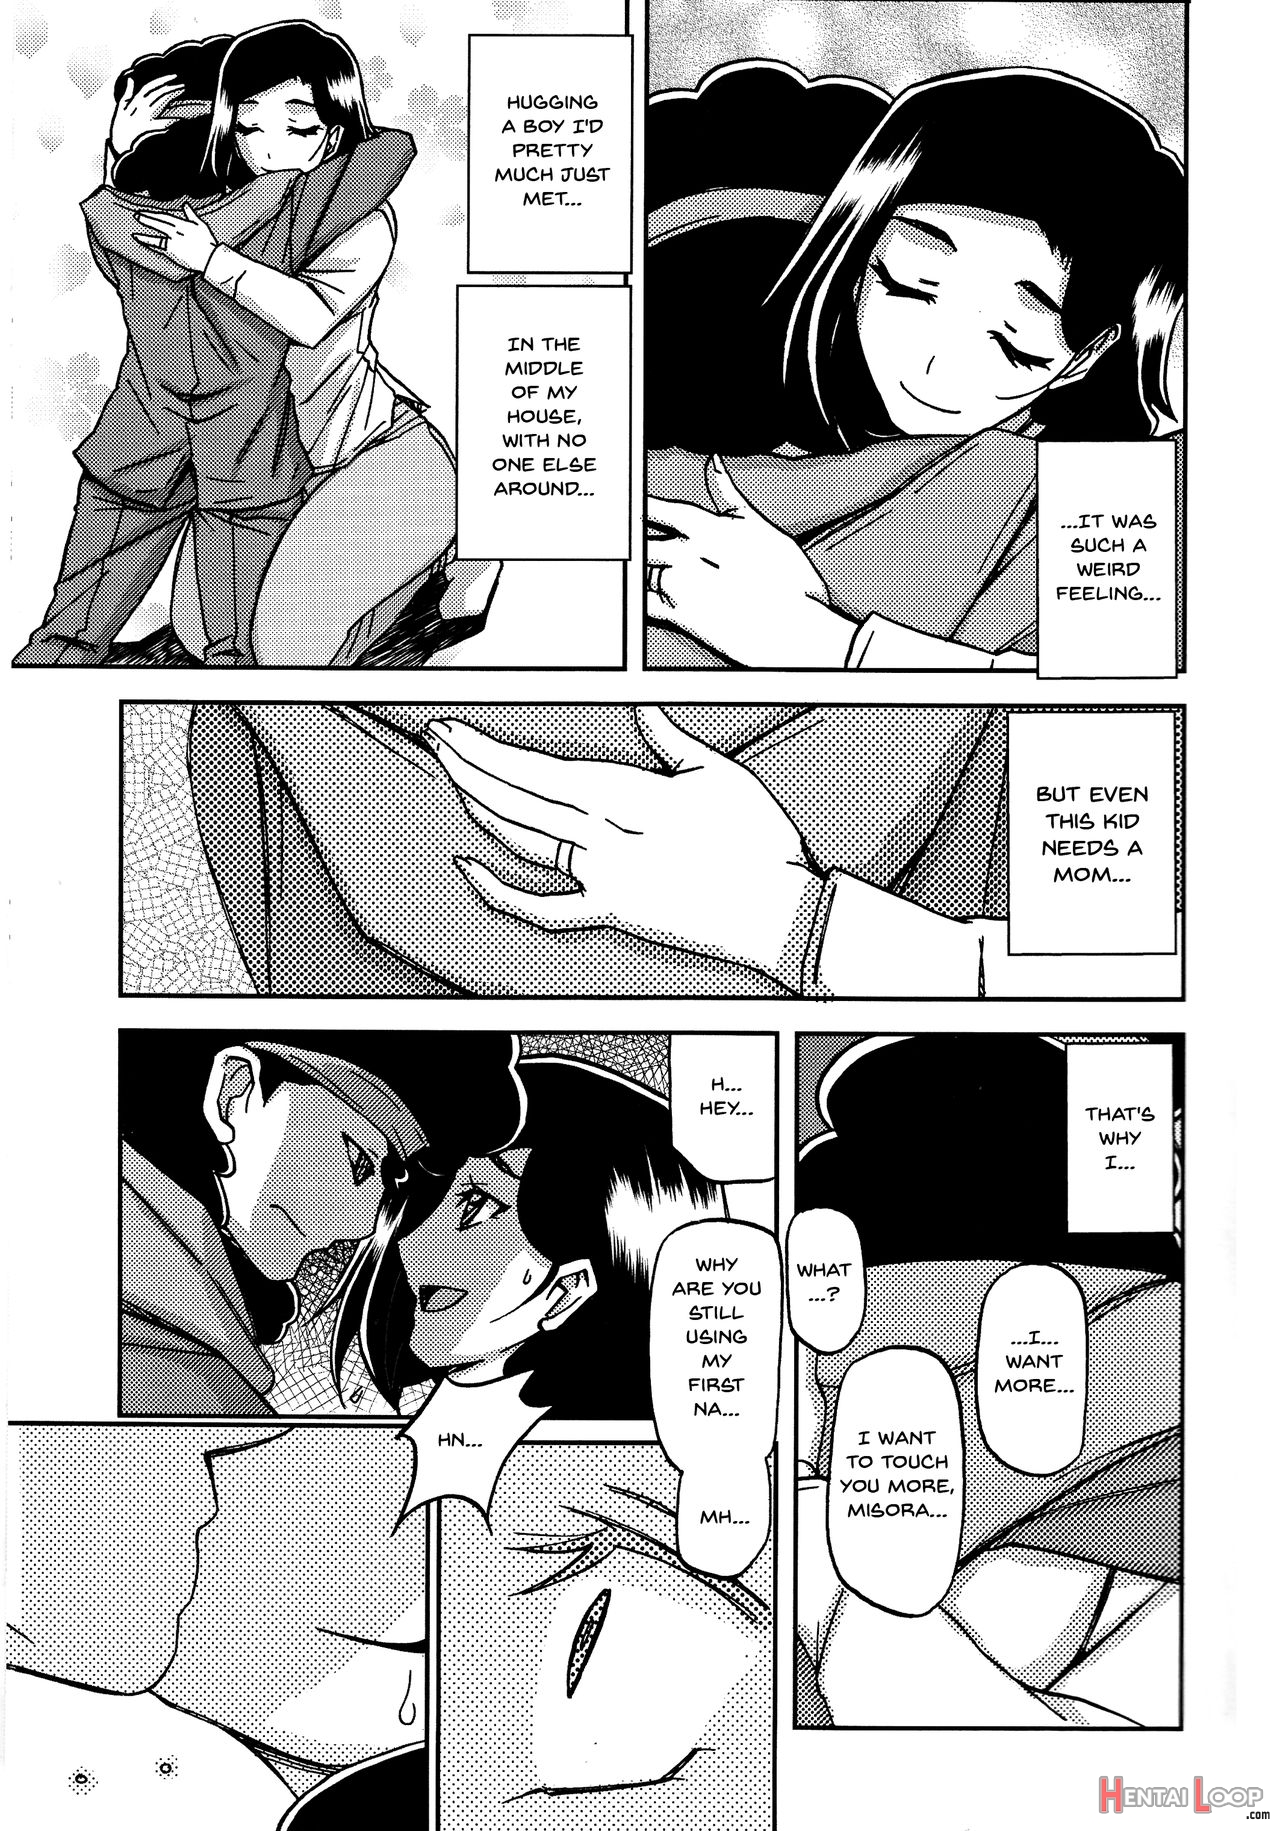 Akebi No Mi - Misora Katei page 10